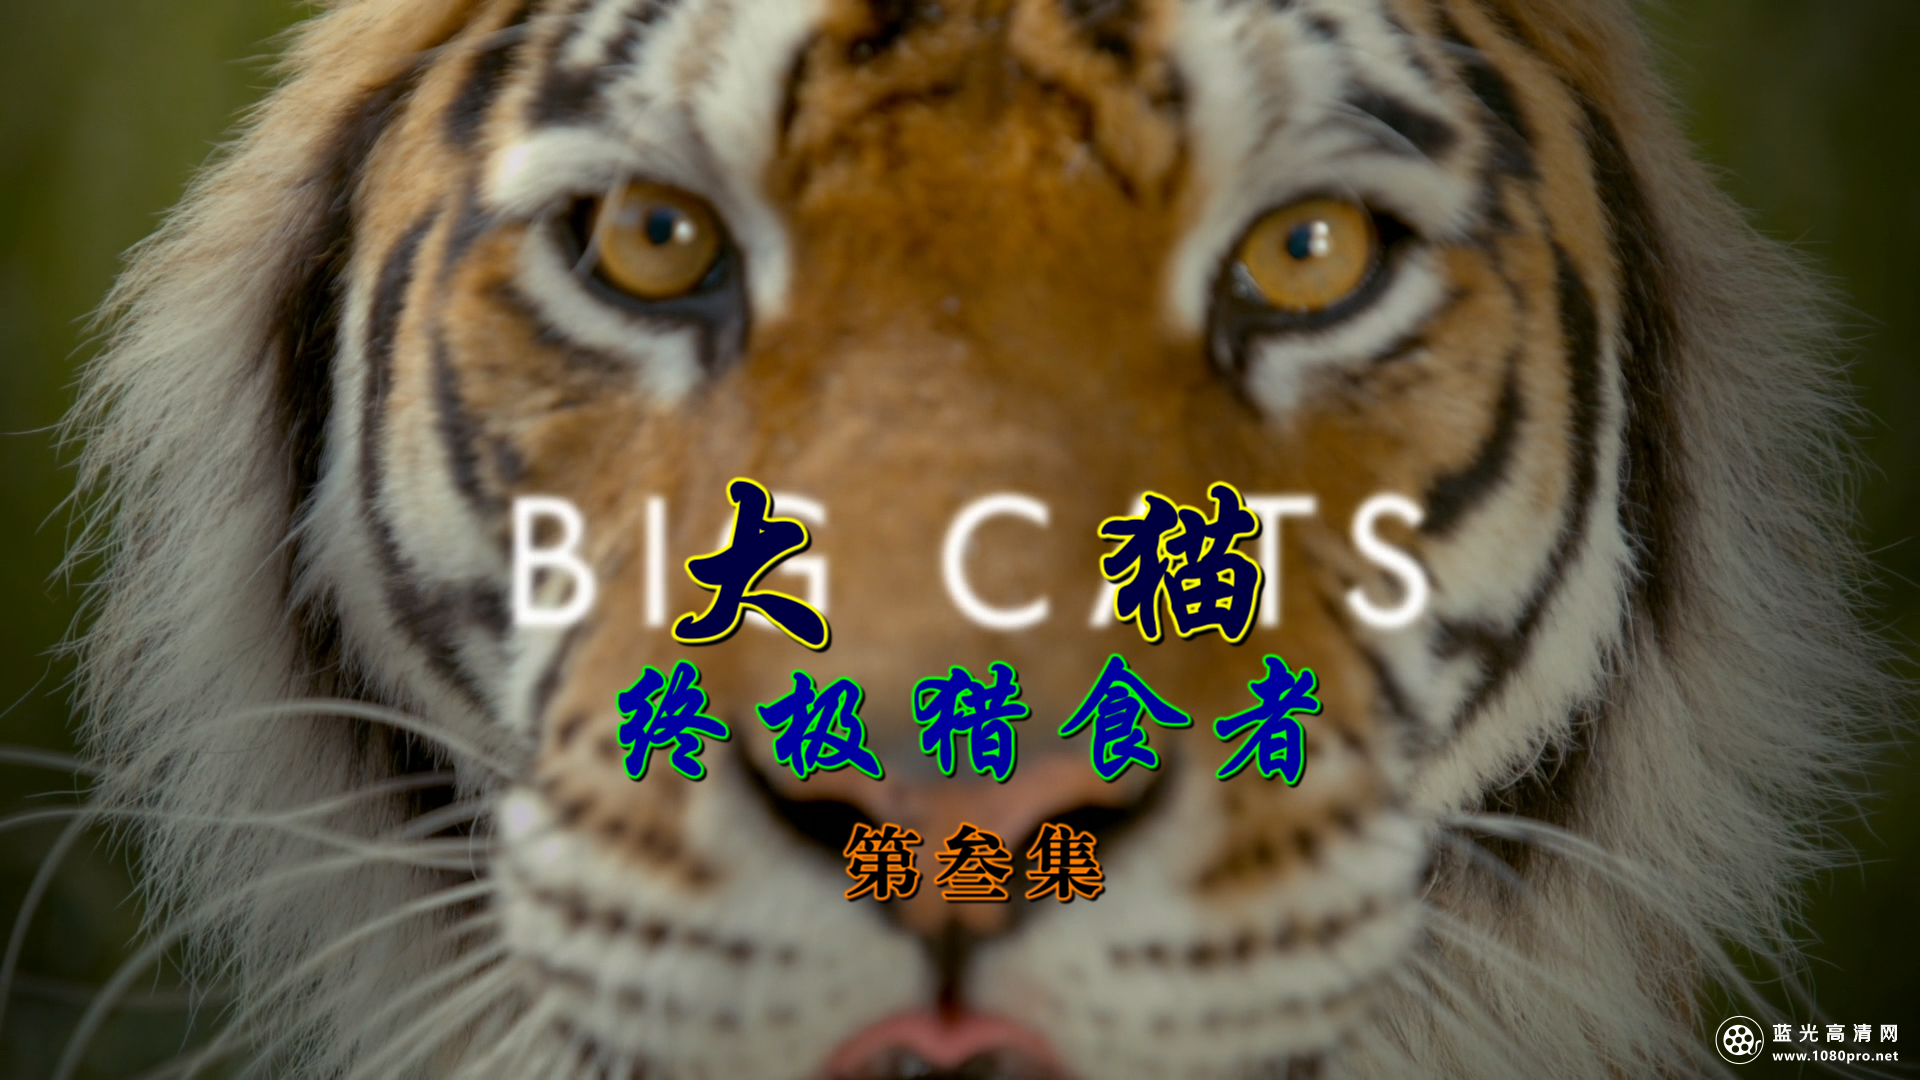 BBC：[大猫：终极猎食者][第壹季/全叁集]【DTS刘琮国语】[简繁双语特效]Big.Cats.S01EP03.2018.1080p.AMZN.WEB.H264.dts-5.1-DVB@szsddqwx 16.48GB-2.png